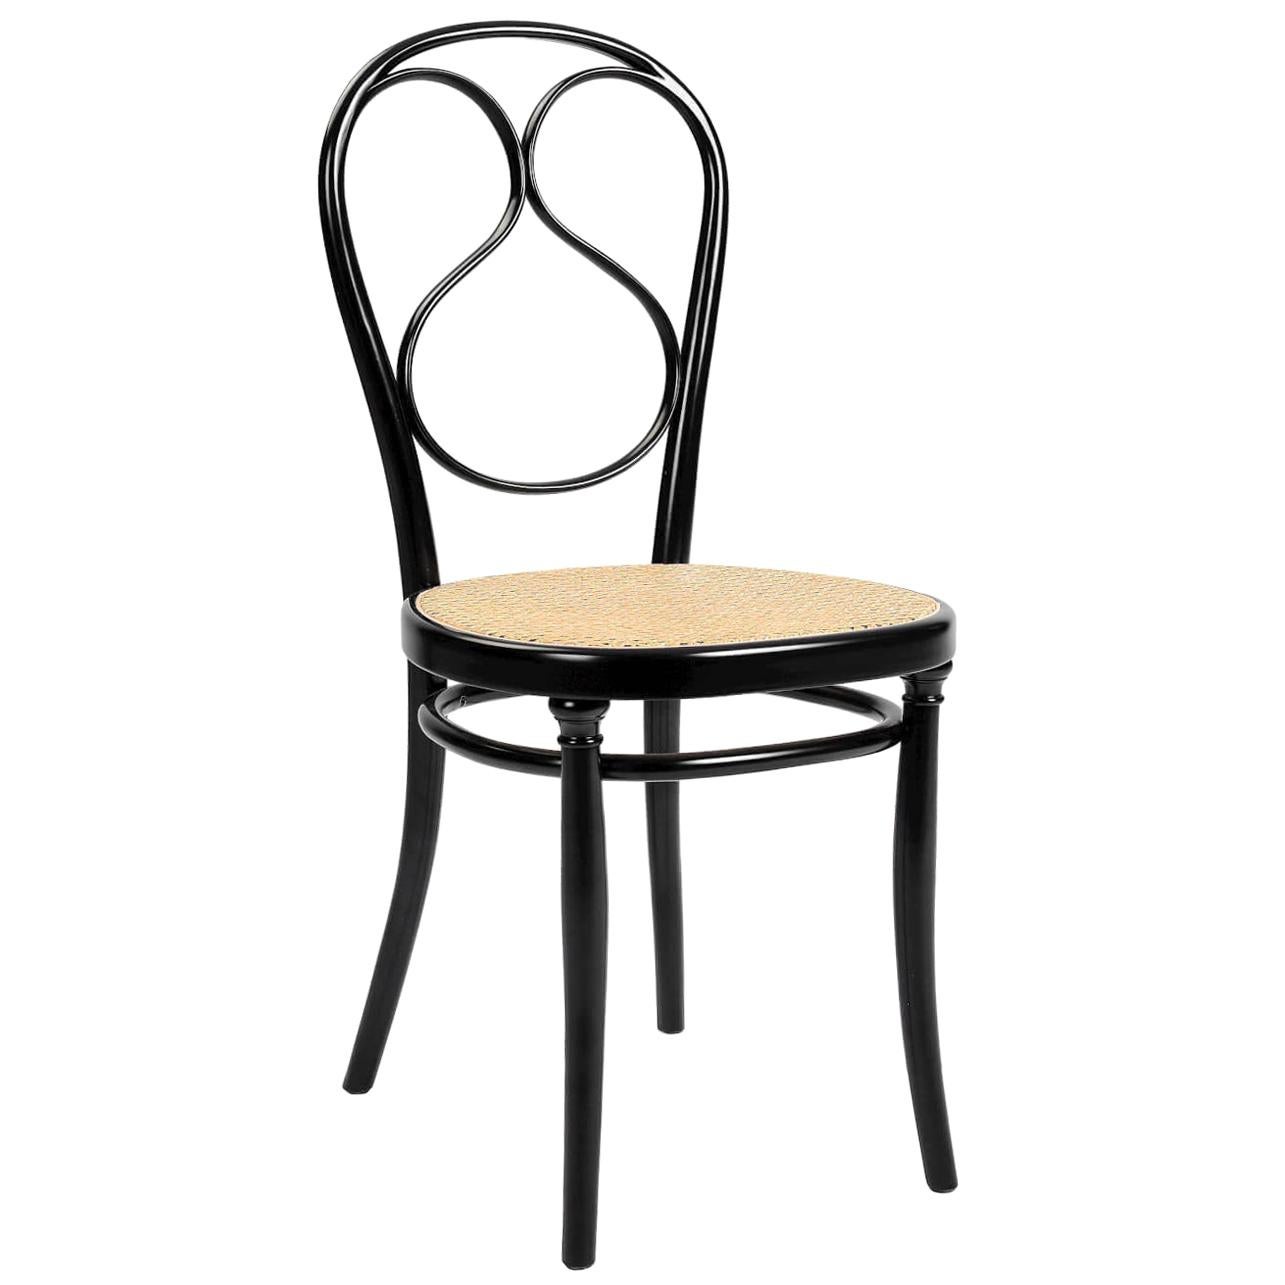 Gebrüder Thonet Vienna GmbH N.1 Chair in Black with Cane Seat